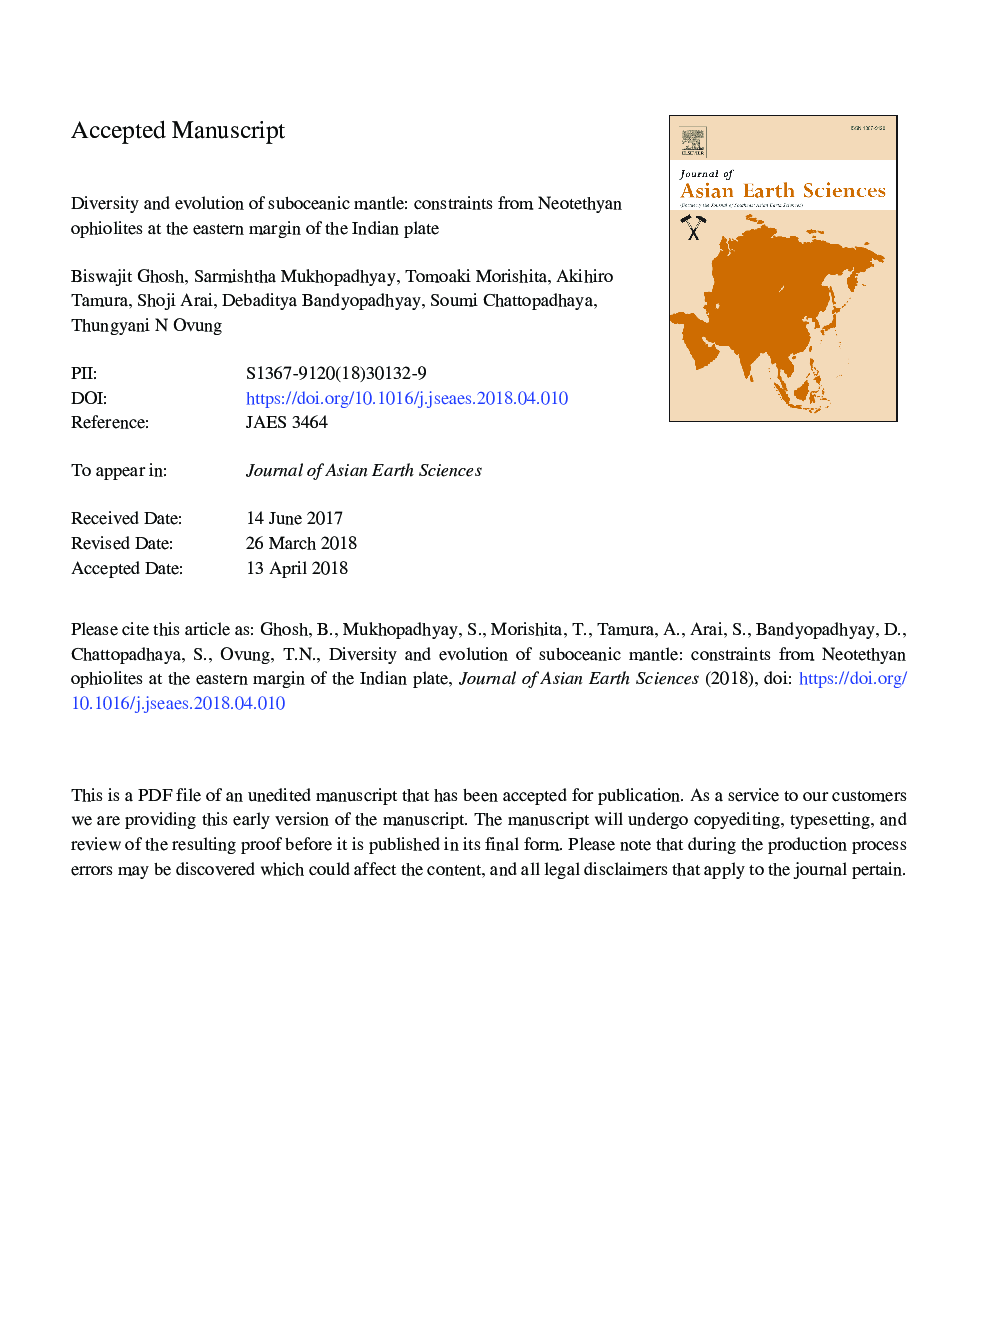 تنوع و تکامل گوشته سابوکانیک: محدودیت های افیولیت نئوتتیان در حاشیه شرقی صفحه هندی